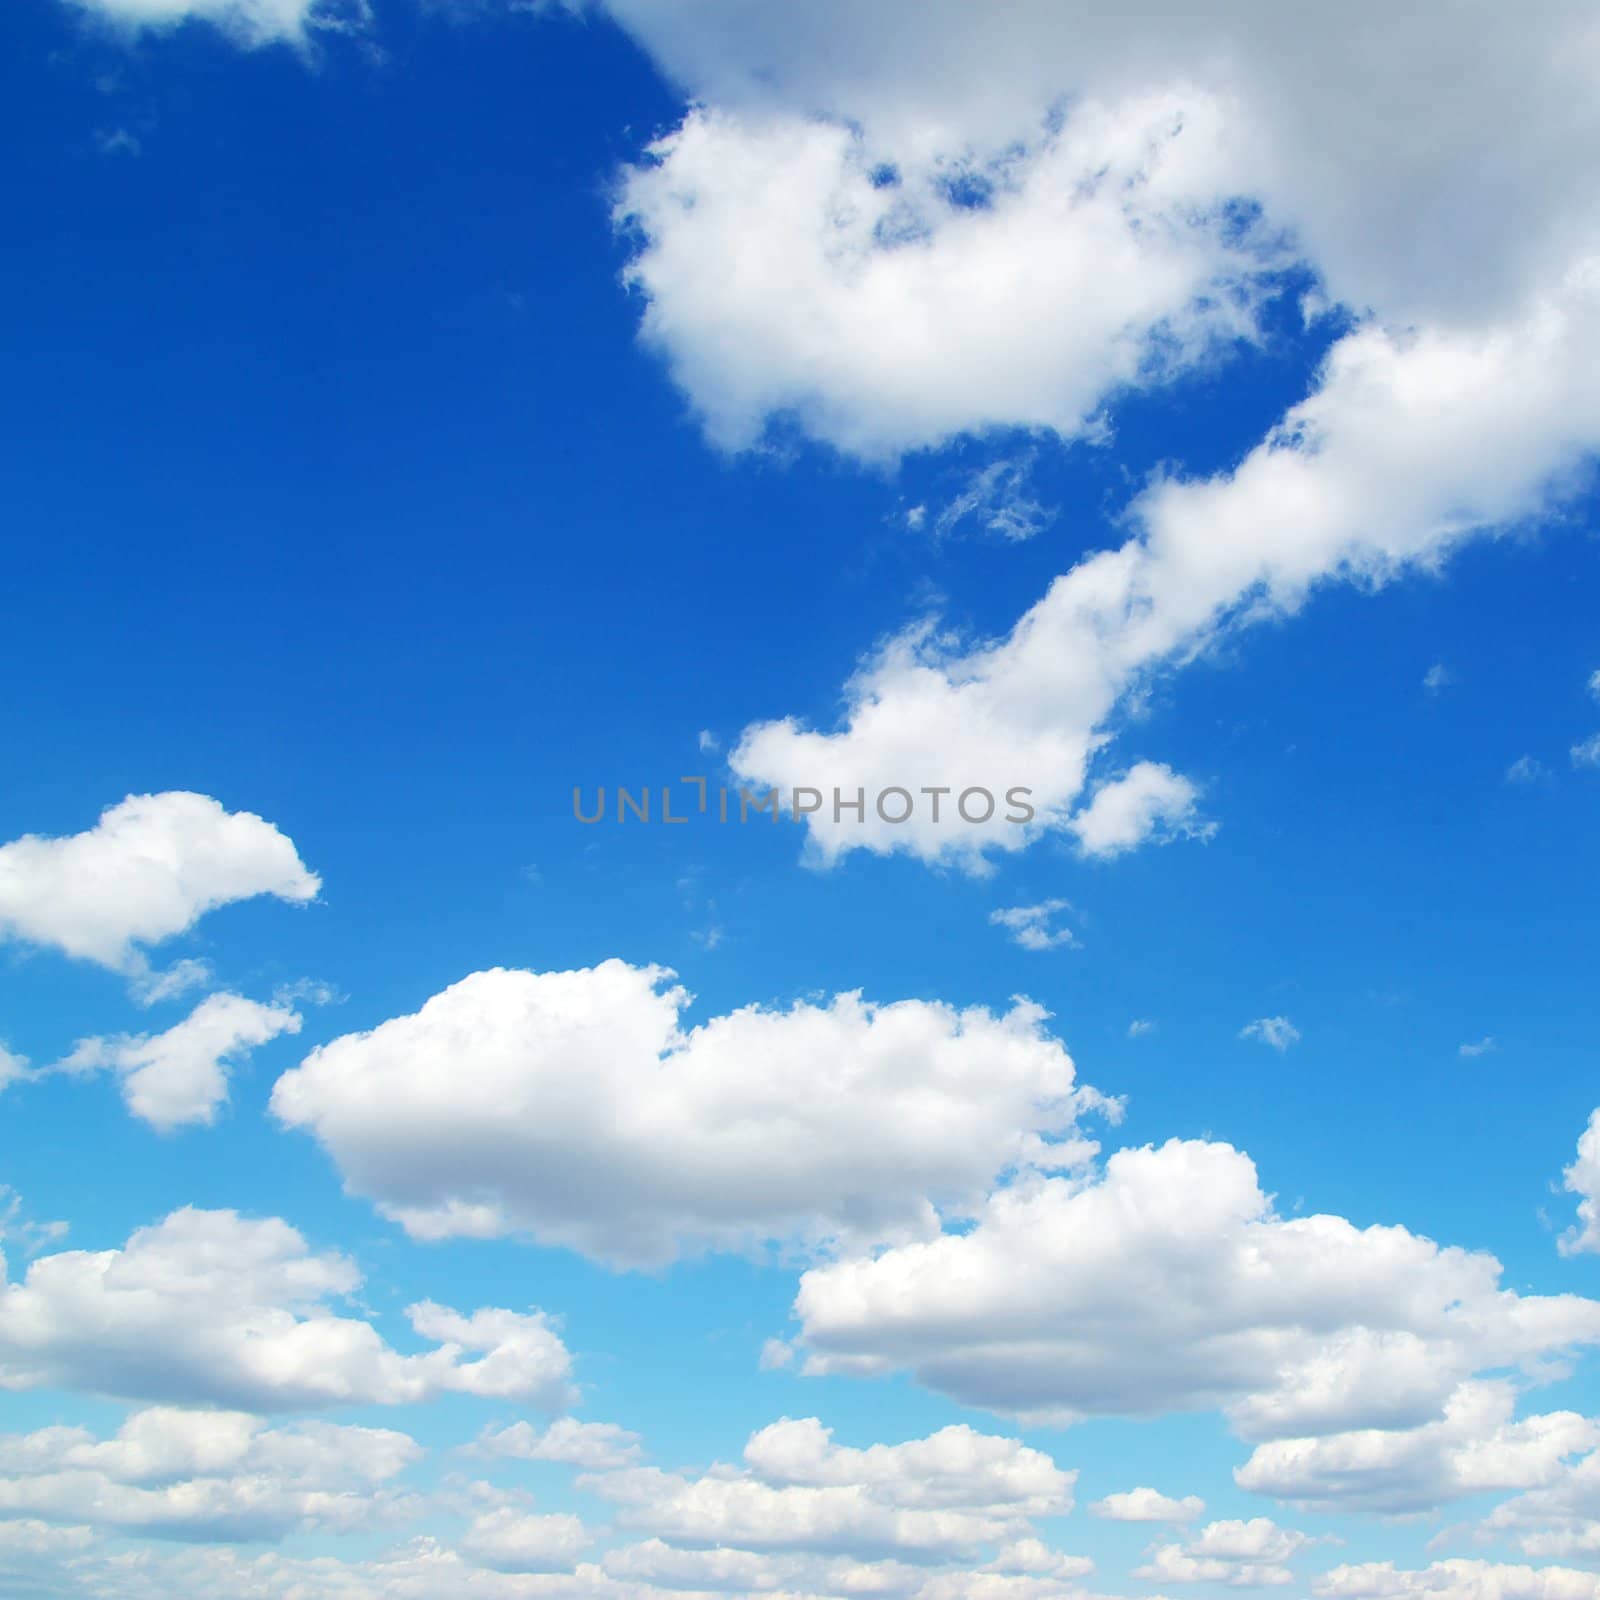  clouds by Pakhnyushchyy